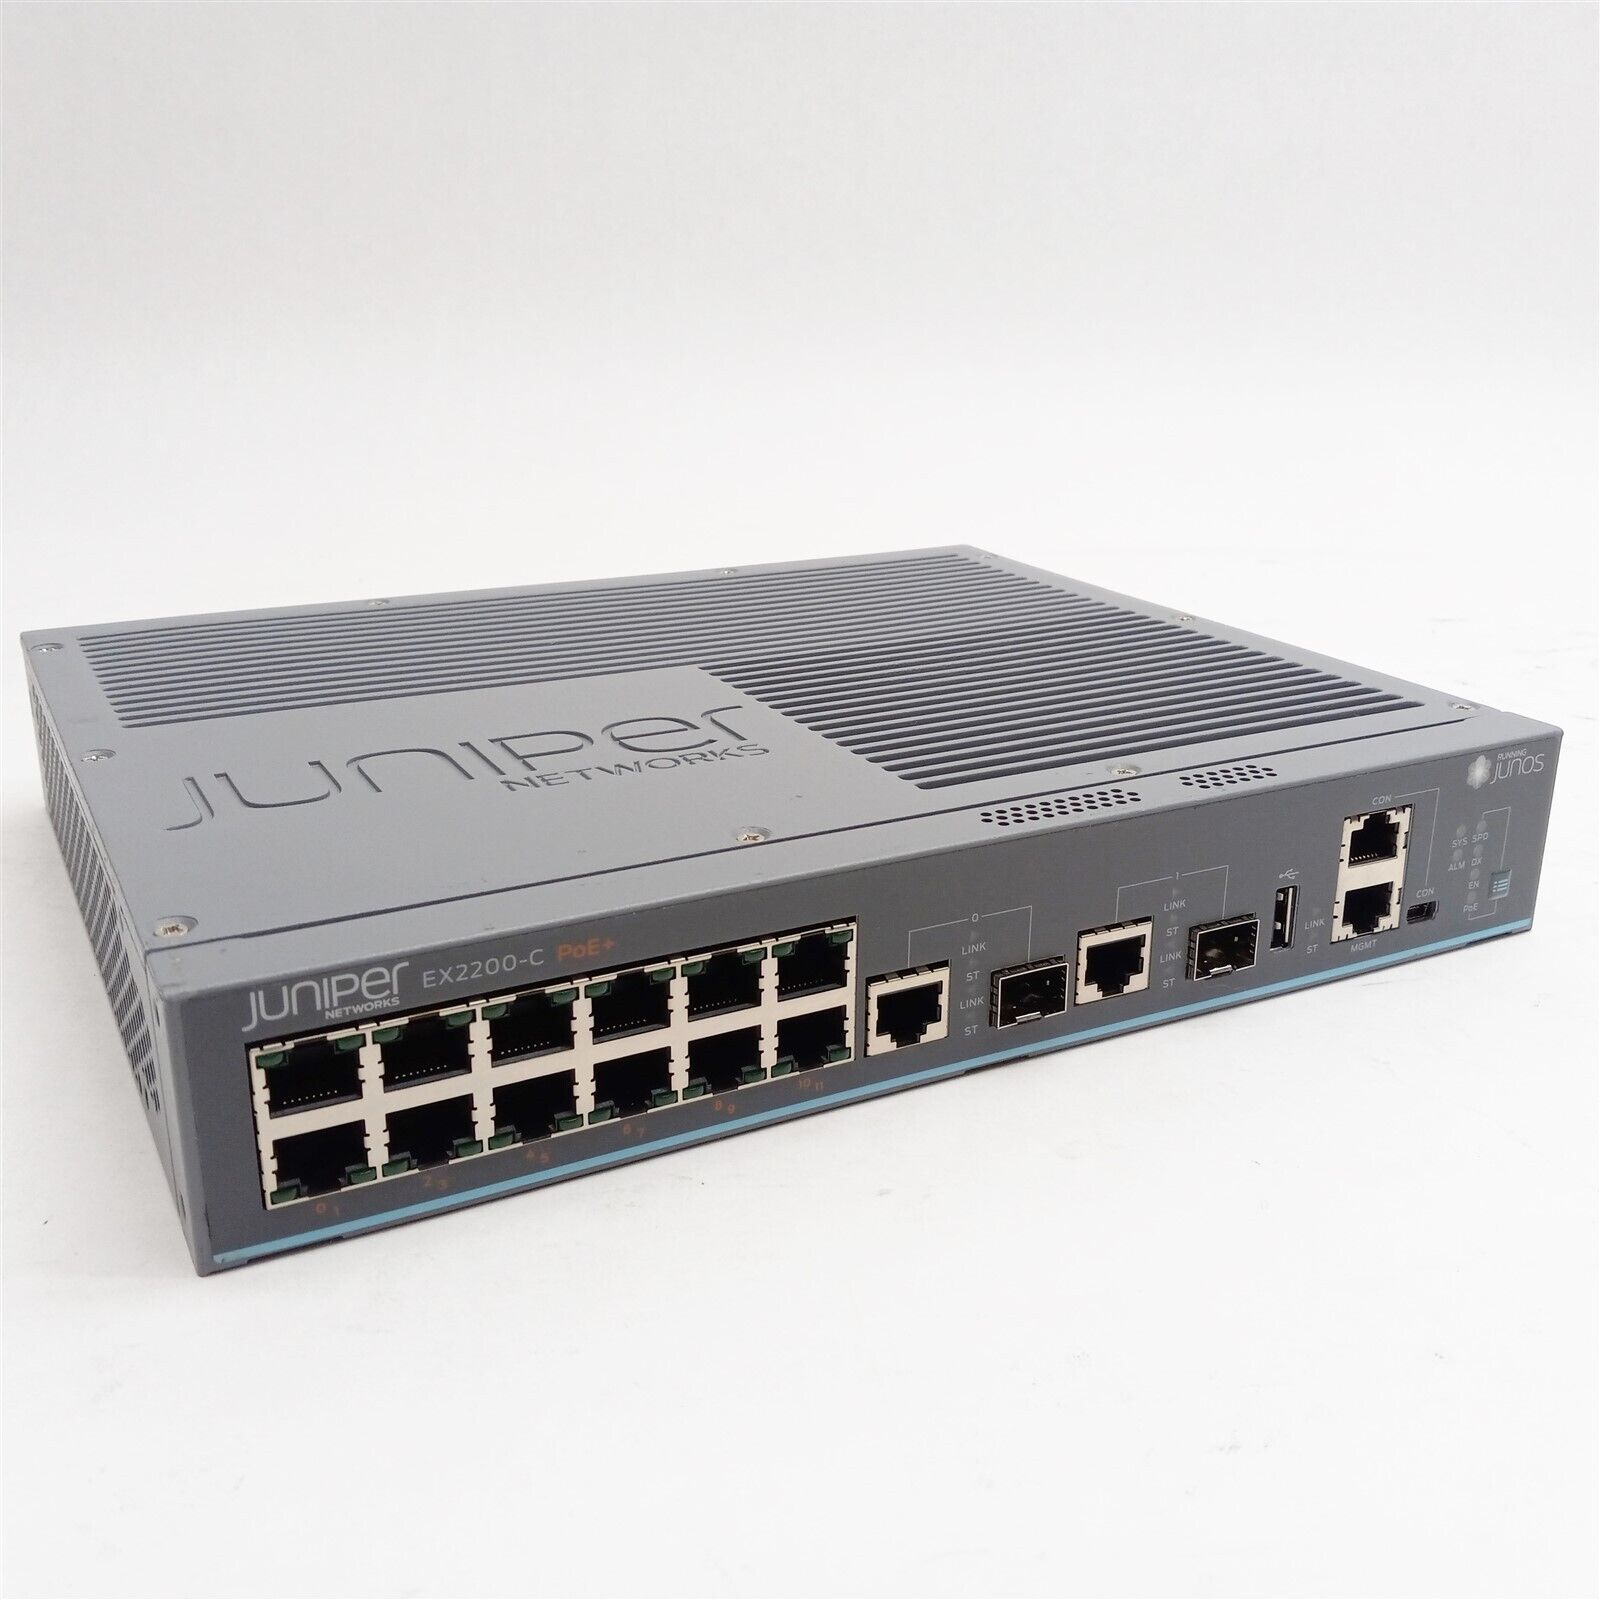 Juniper EX2200-C EX2200-C-12P-2G 12-Port Gigabit Ethernet PoE Network Switch